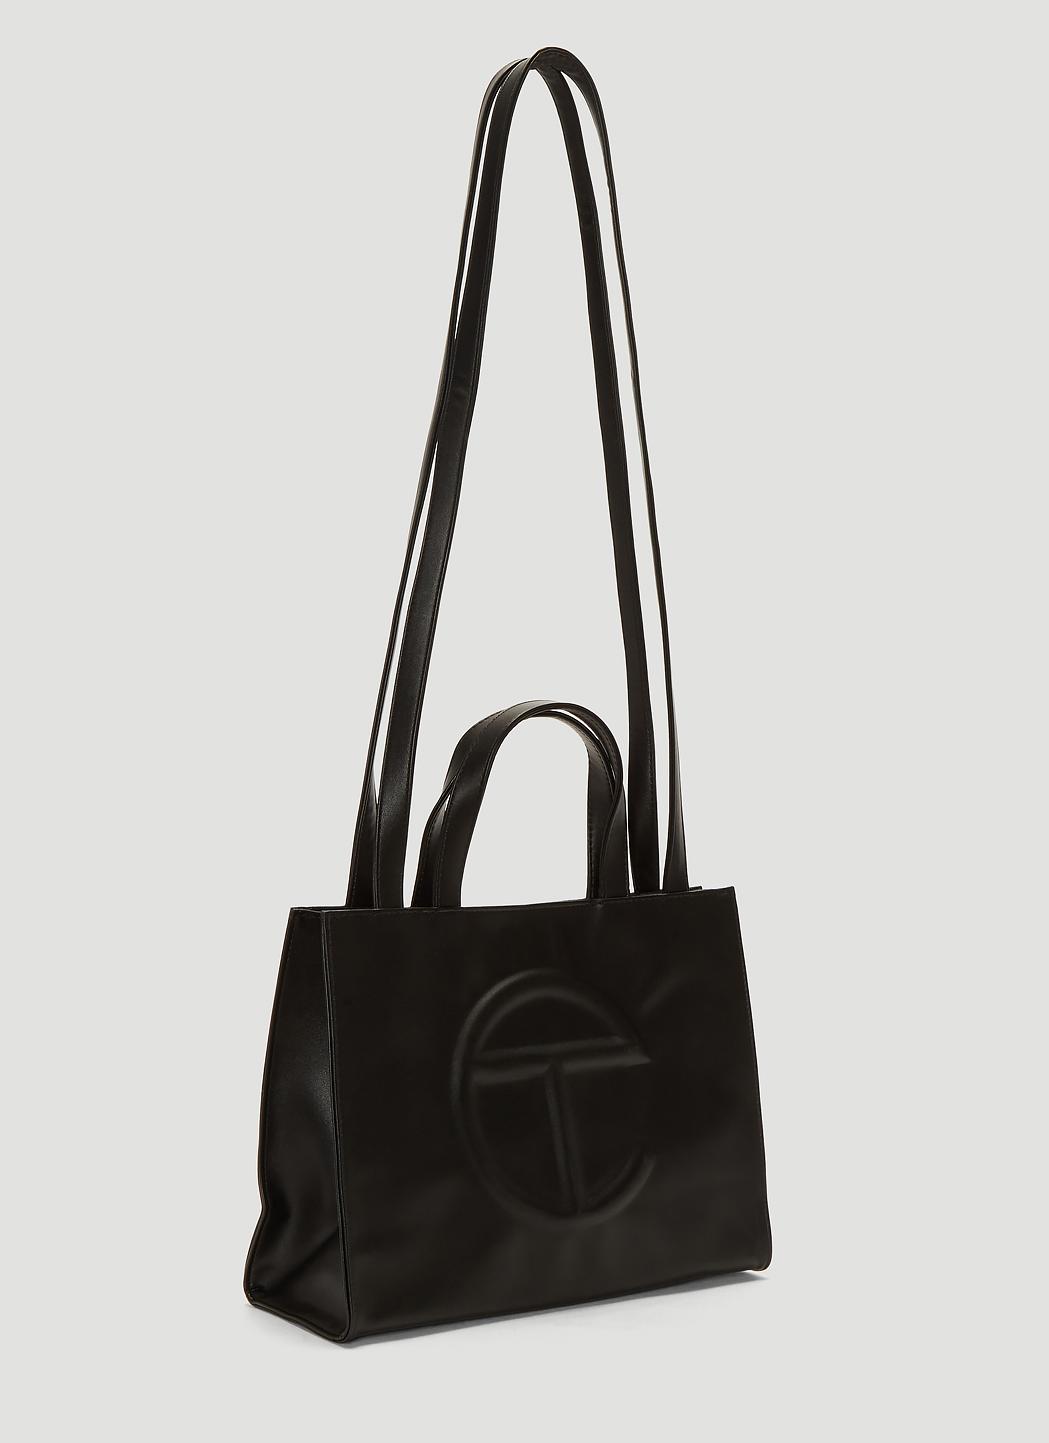 Telfar Black Shopping Bag Small - munimoro.gob.pe